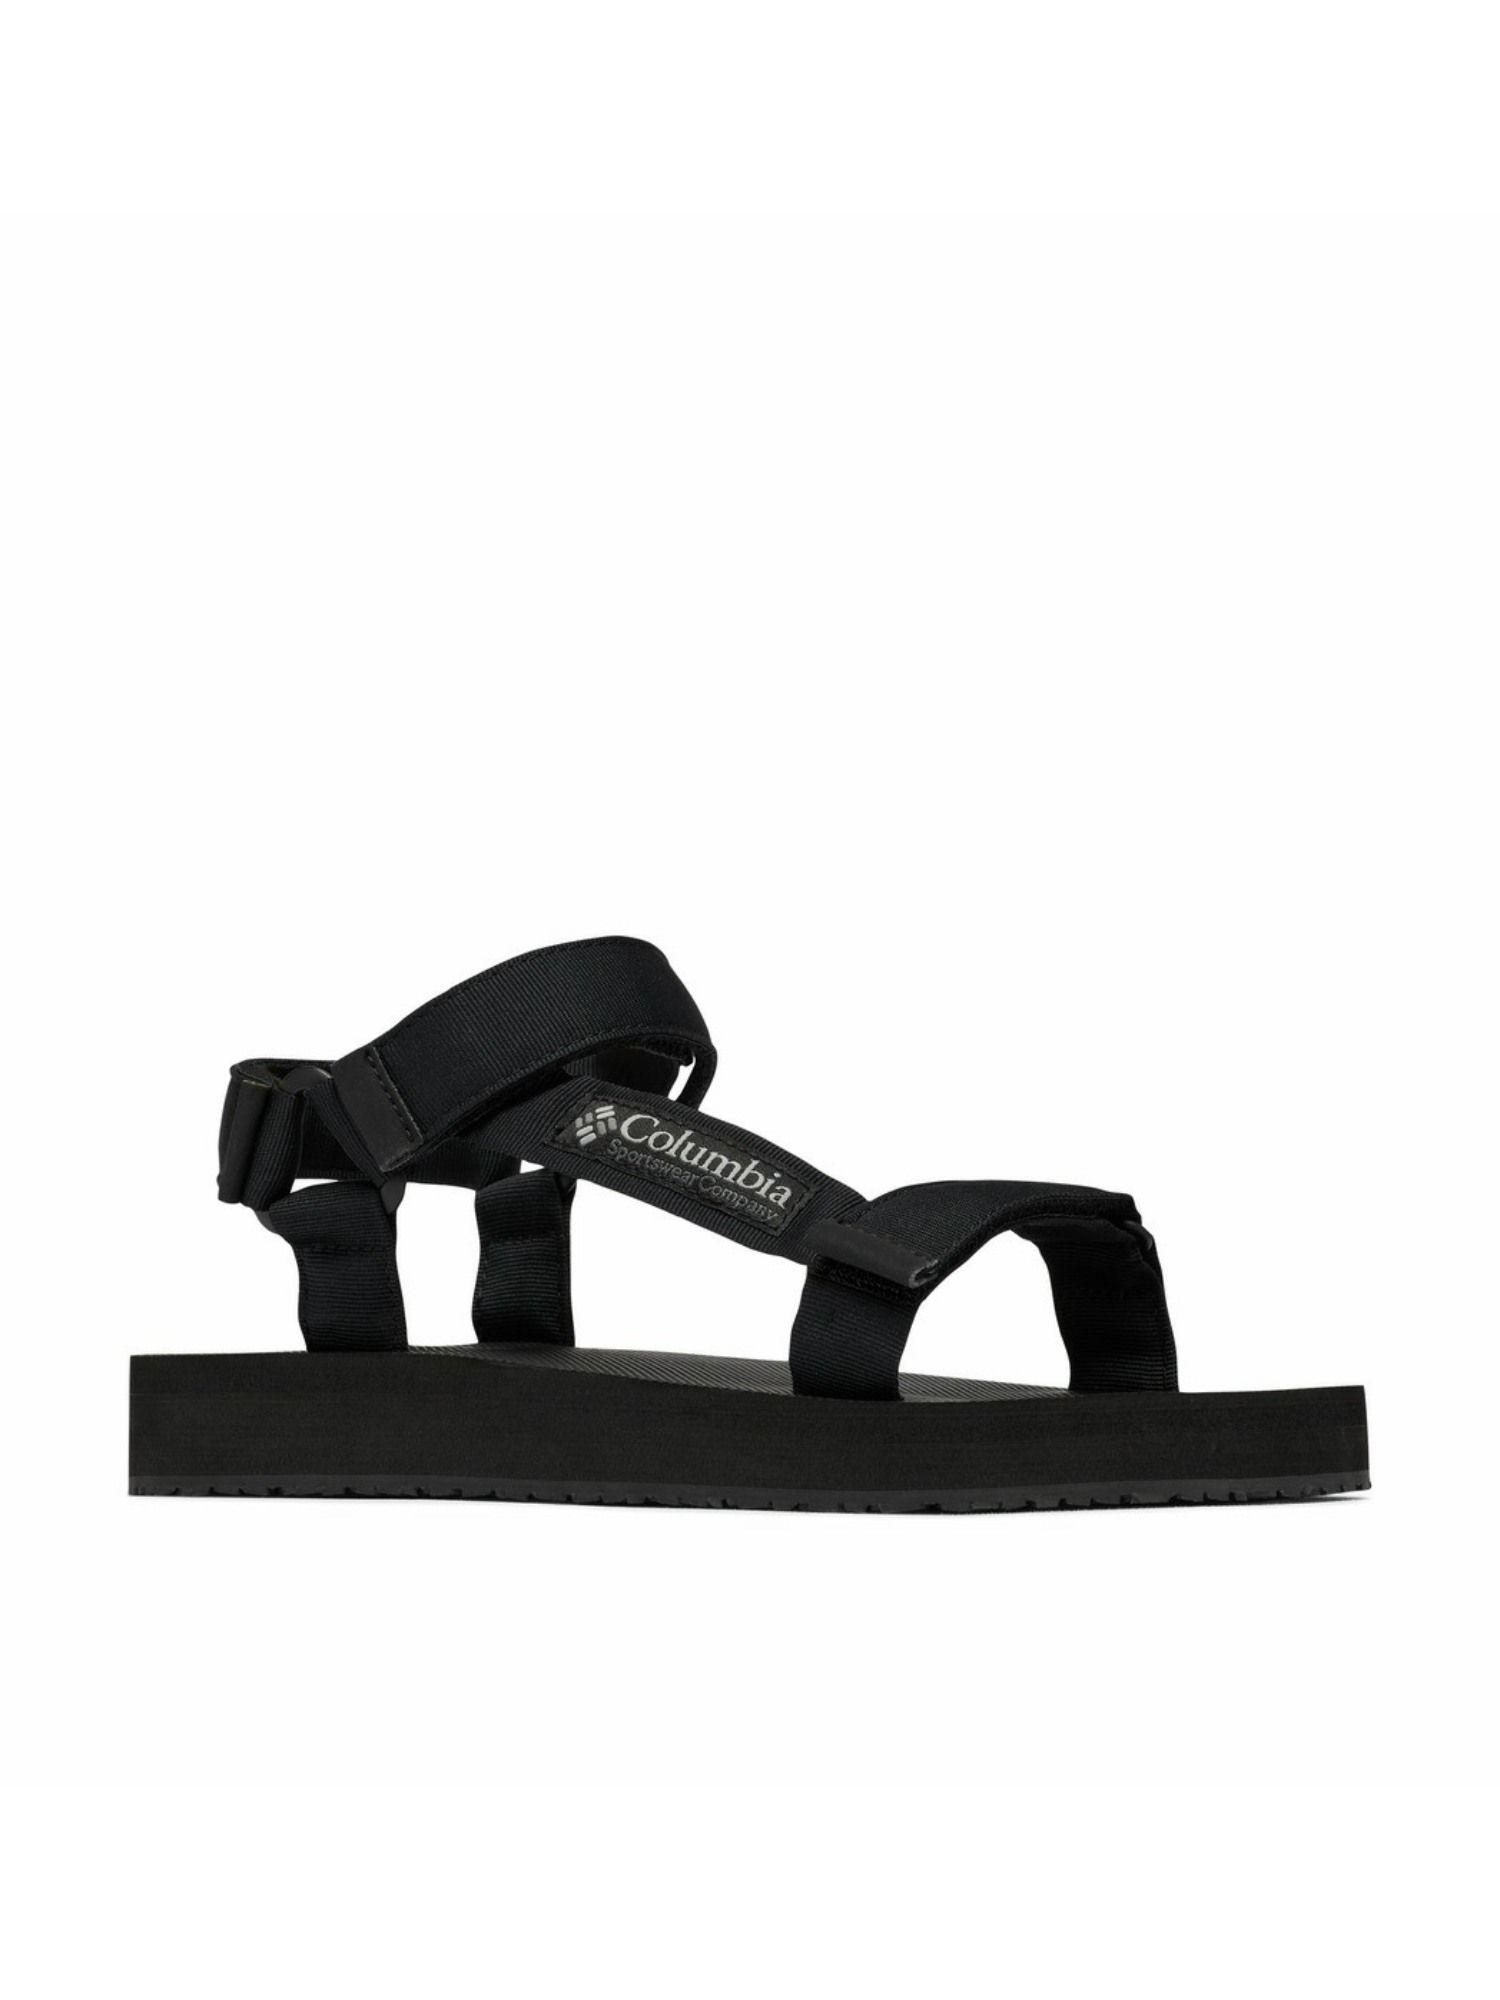 mens black colour polyester breaksider sandal